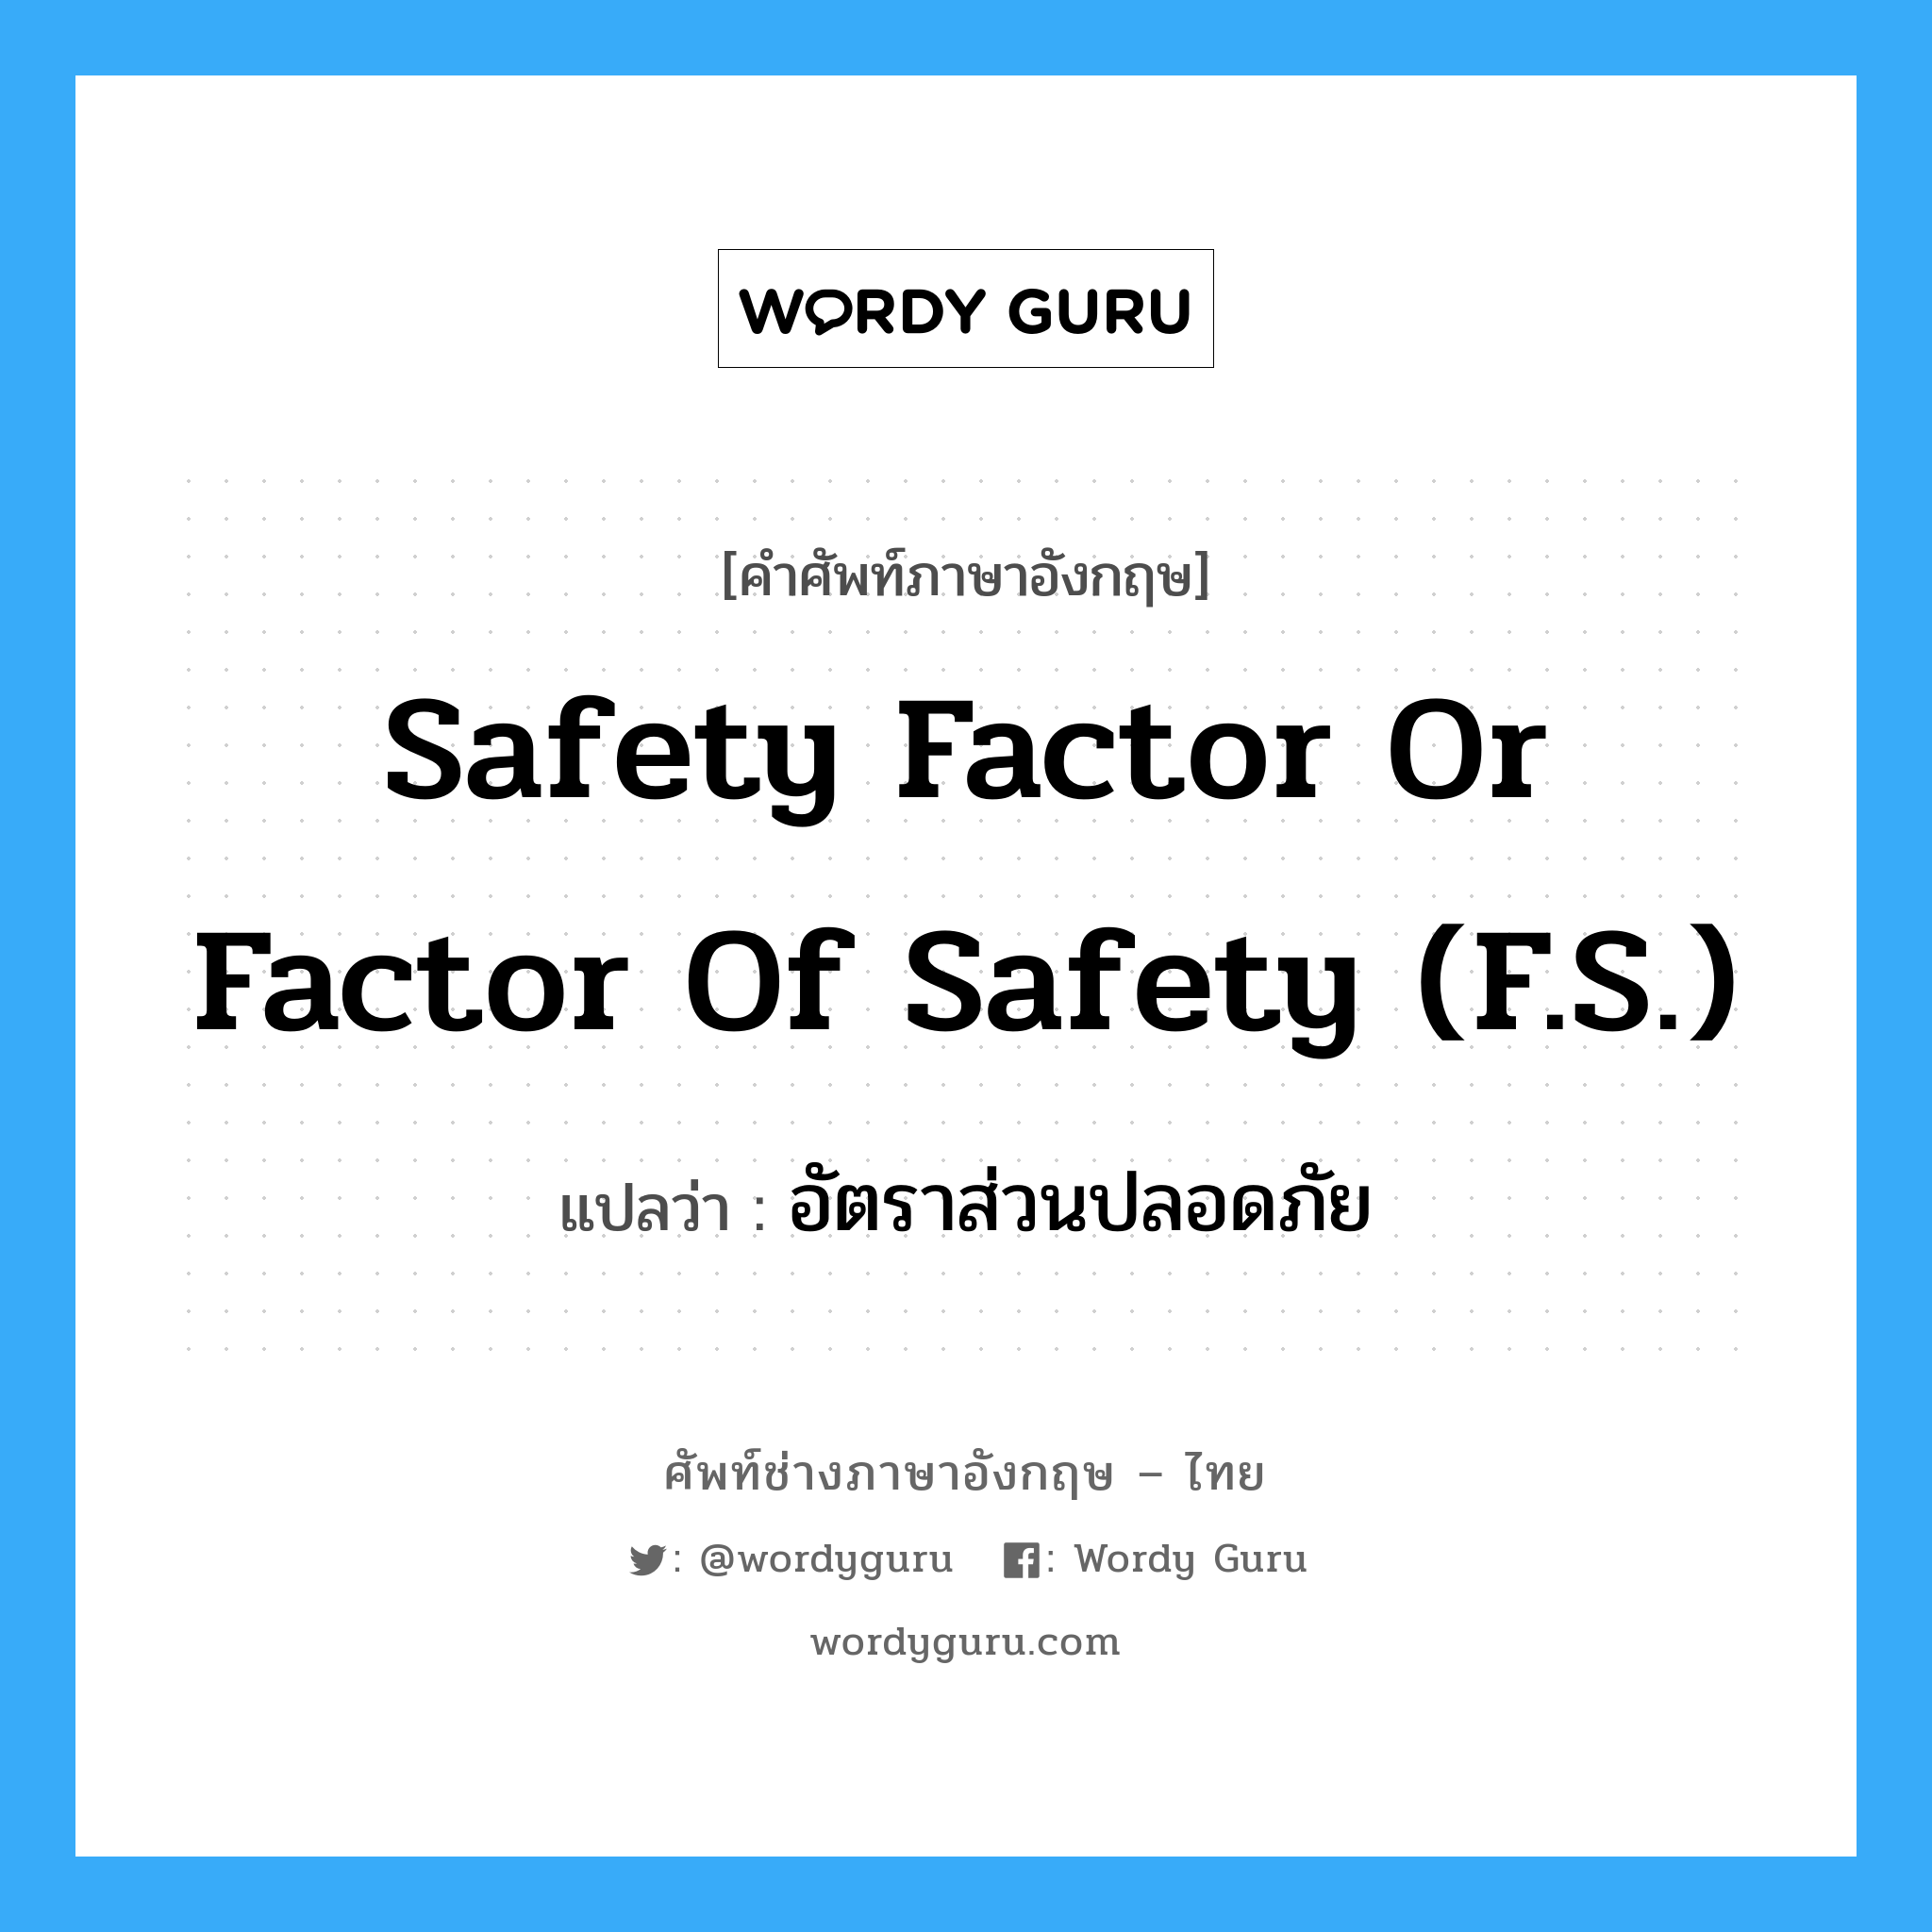 safety factor or factor of safety (F.S.) แปลว่า?, คำศัพท์ช่างภาษาอังกฤษ - ไทย safety factor or factor of safety (F.S.) คำศัพท์ภาษาอังกฤษ safety factor or factor of safety (F.S.) แปลว่า อัตราส่วนปลอดภัย